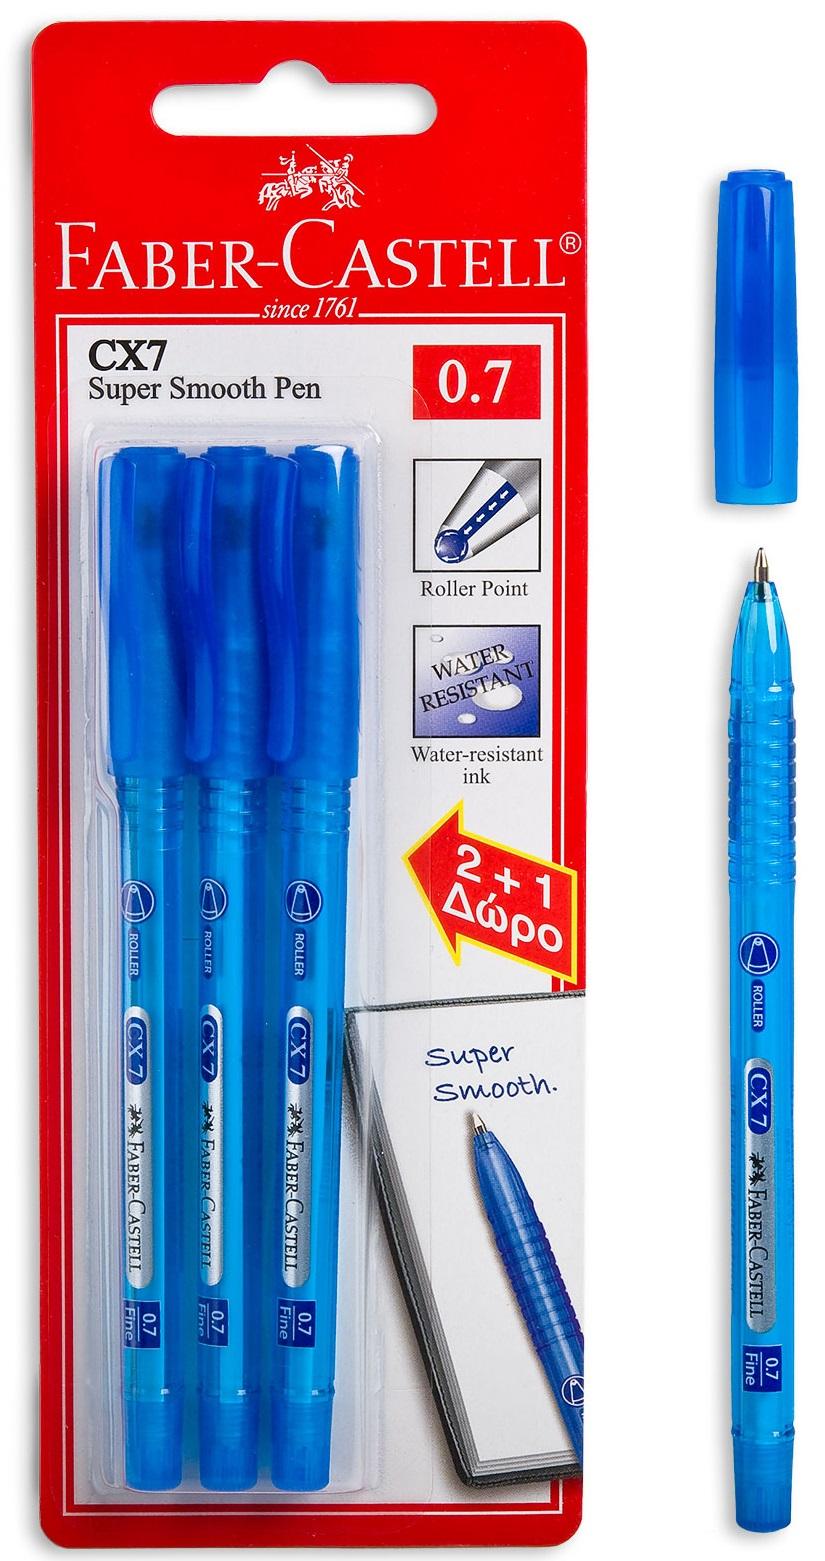 Faber Castell Cx7 Ballpoint Pen, 0.7 mm Blue writting